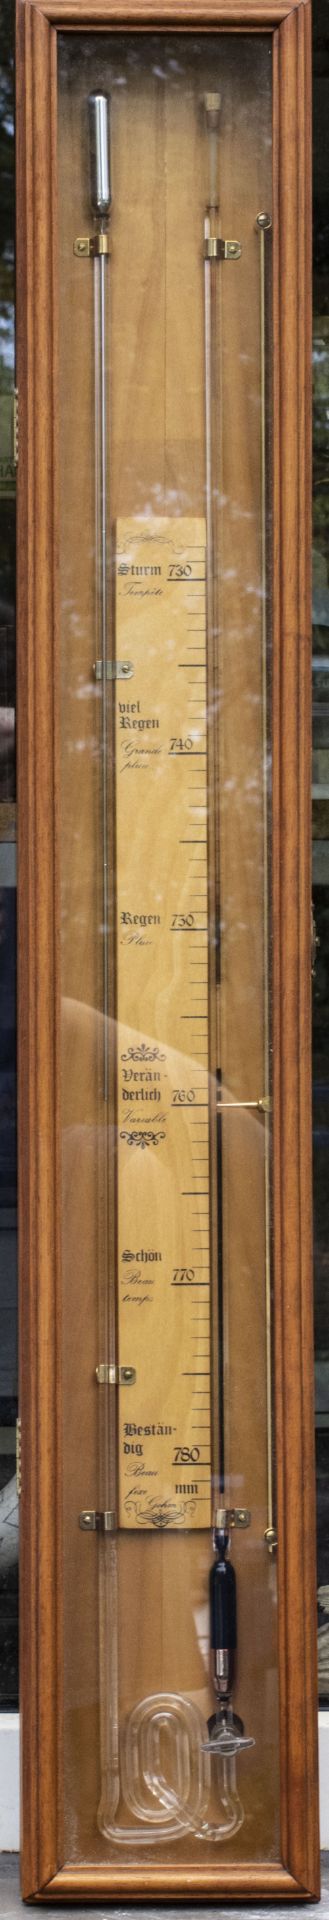 Luftdruckmesser / Barometer, Gohm, 20. Jh.